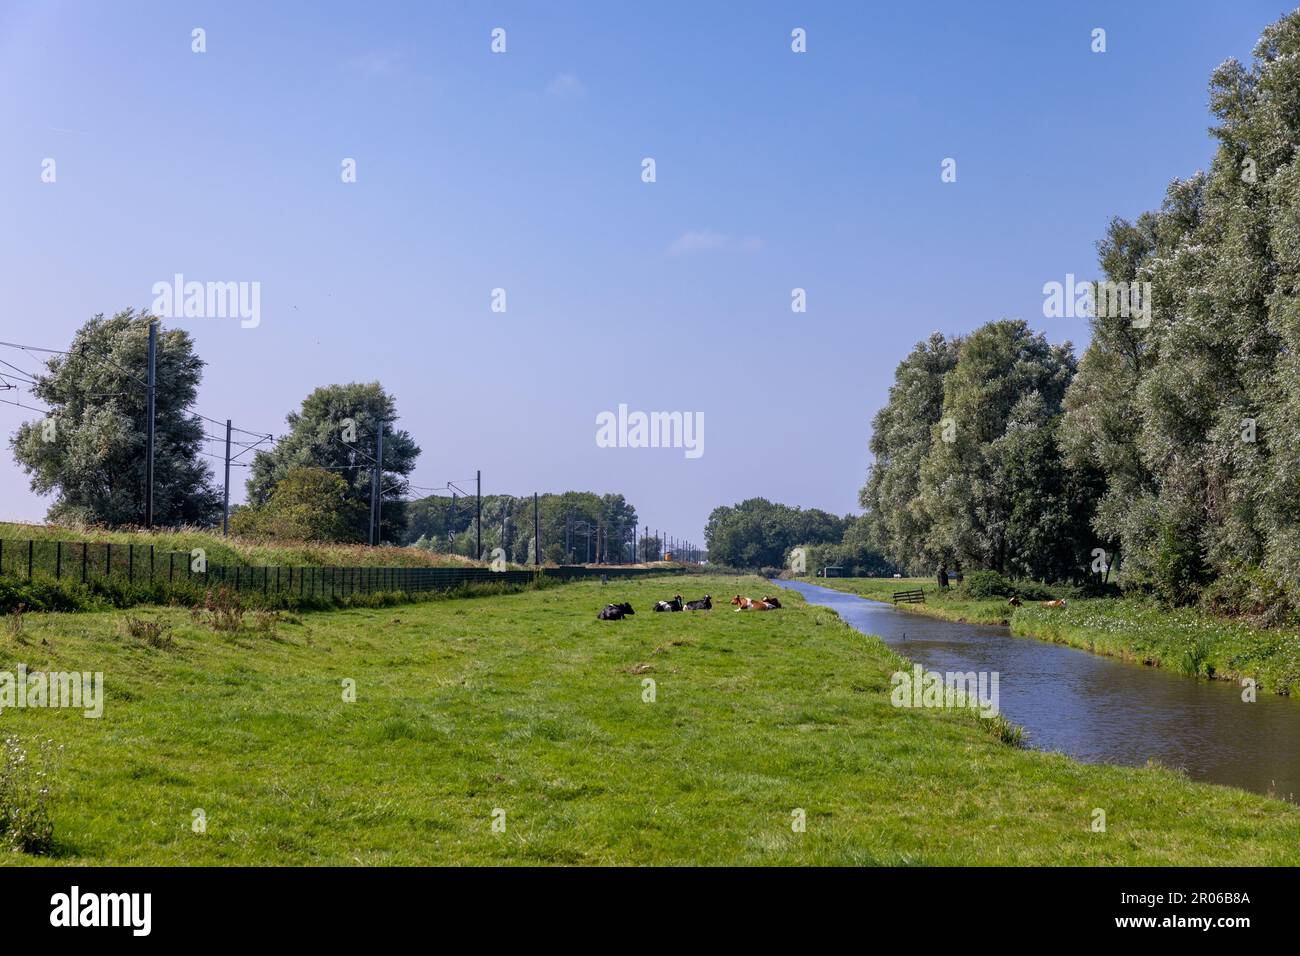 I bovini si trovano rilassati in un prato vicino a una linea ferroviaria nel villaggio di Sassenheim, nei Paesi Bassi, nel sud dell'Olanda. In una giornata blu limpida. Foto Stock